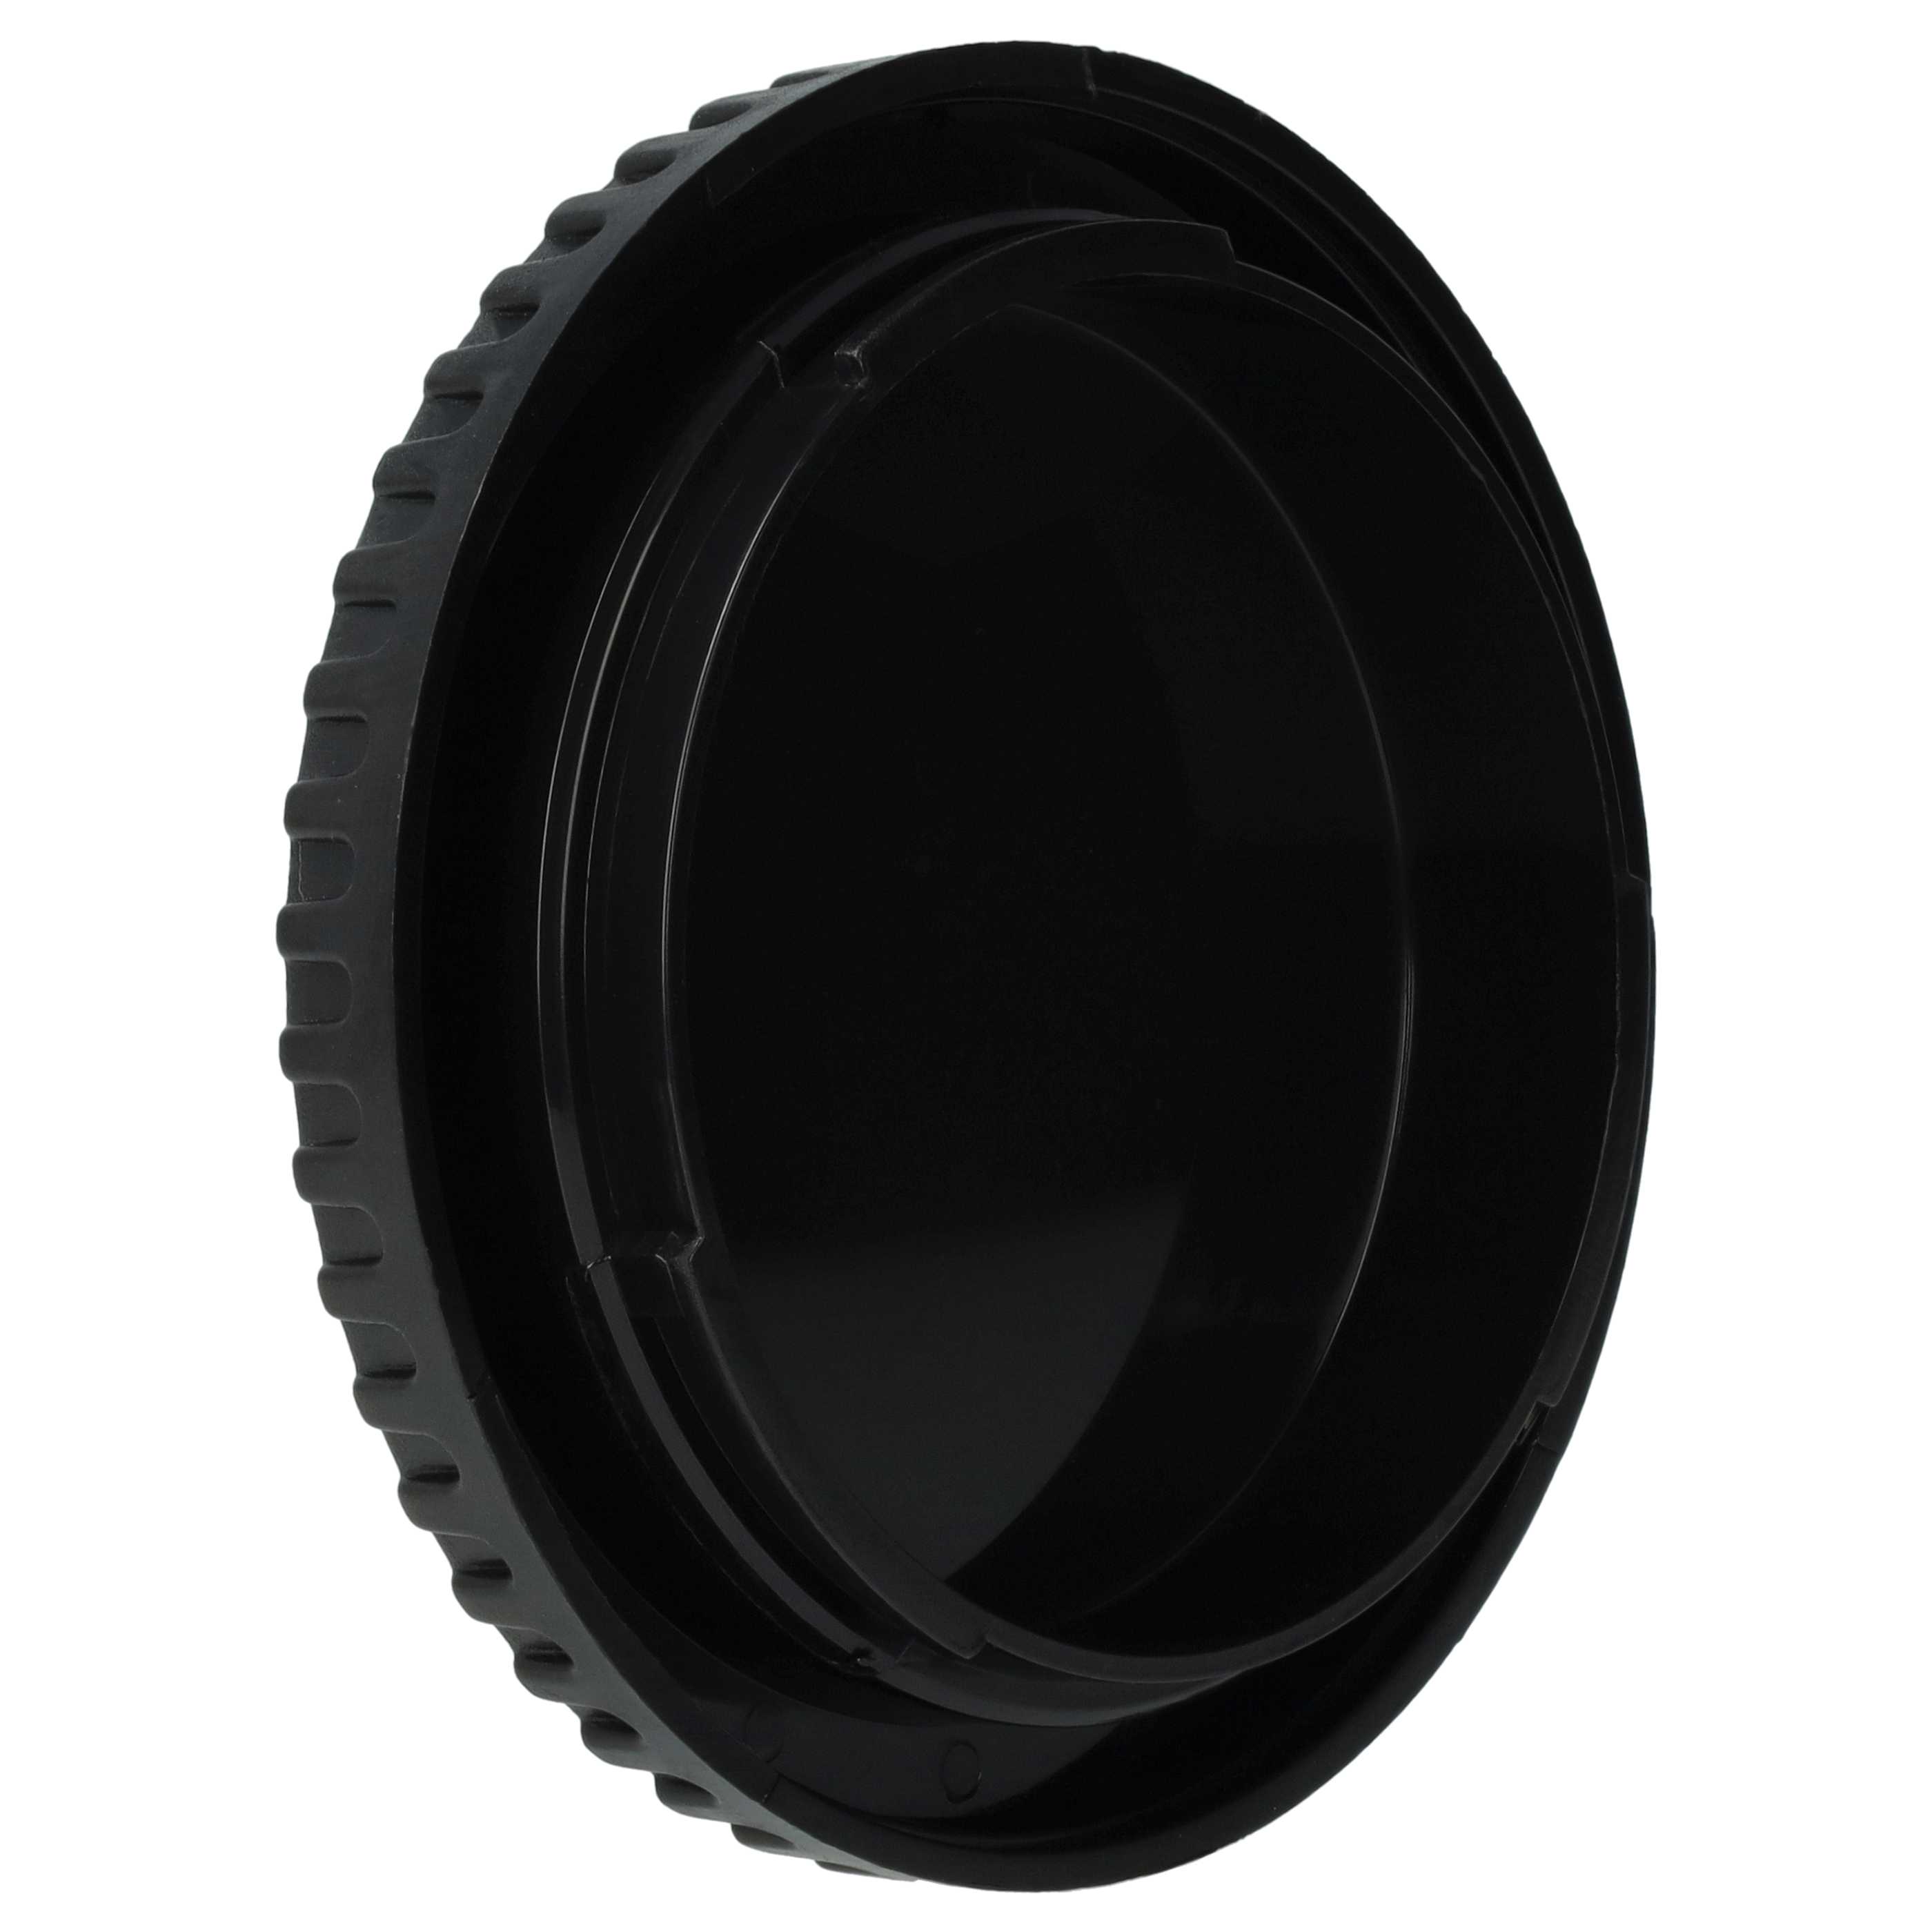 Coperchio per corpo macchina per fotocamera, DSLR, Canon EOS - nero